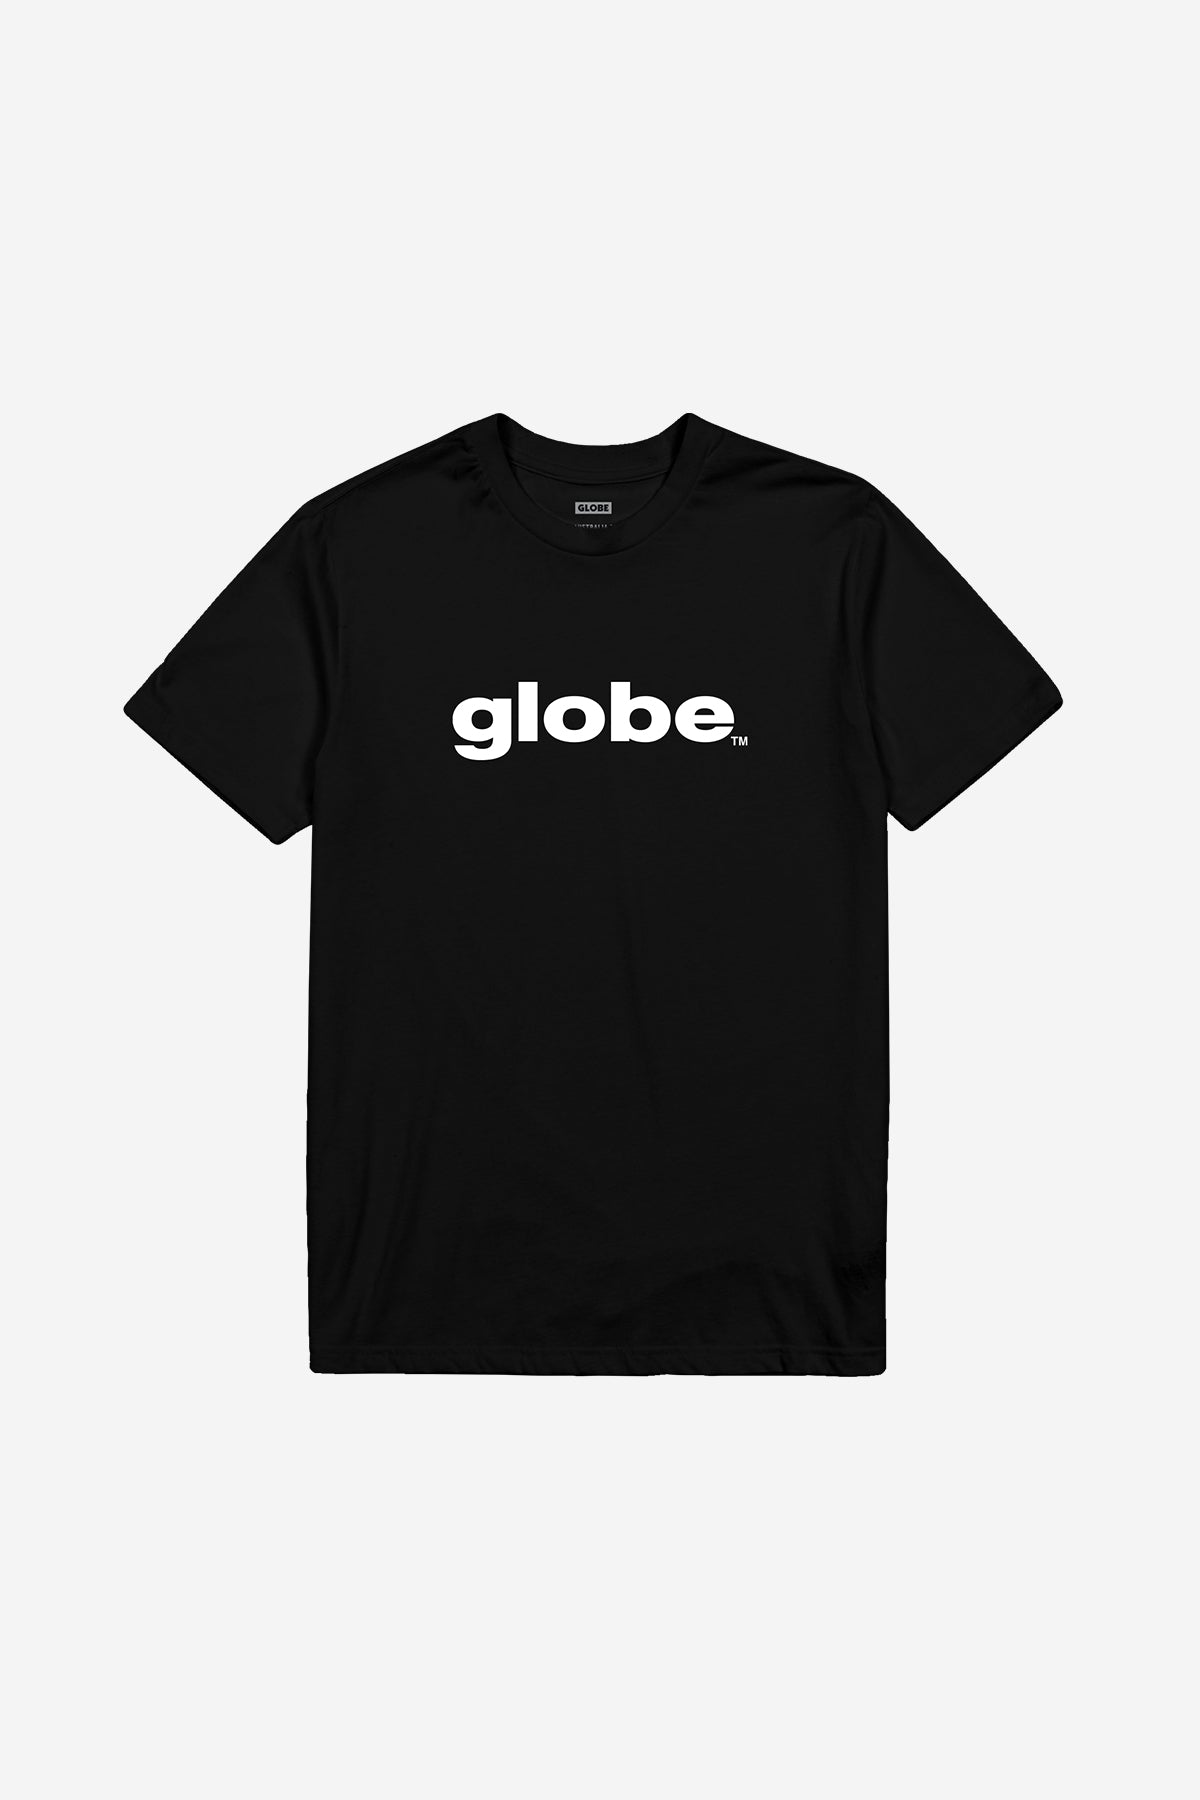 Globe - O.G Tee - Zwart